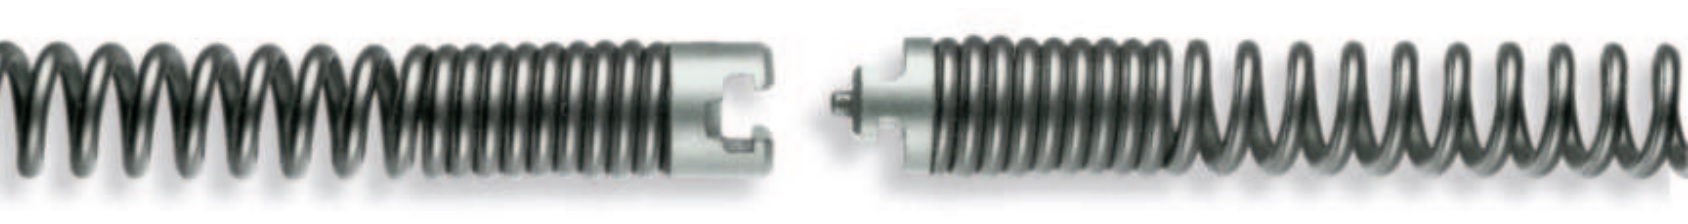 Spirale 16 - 32 mm, bis 4,5 m, mit Nut-Stift-Kupplung